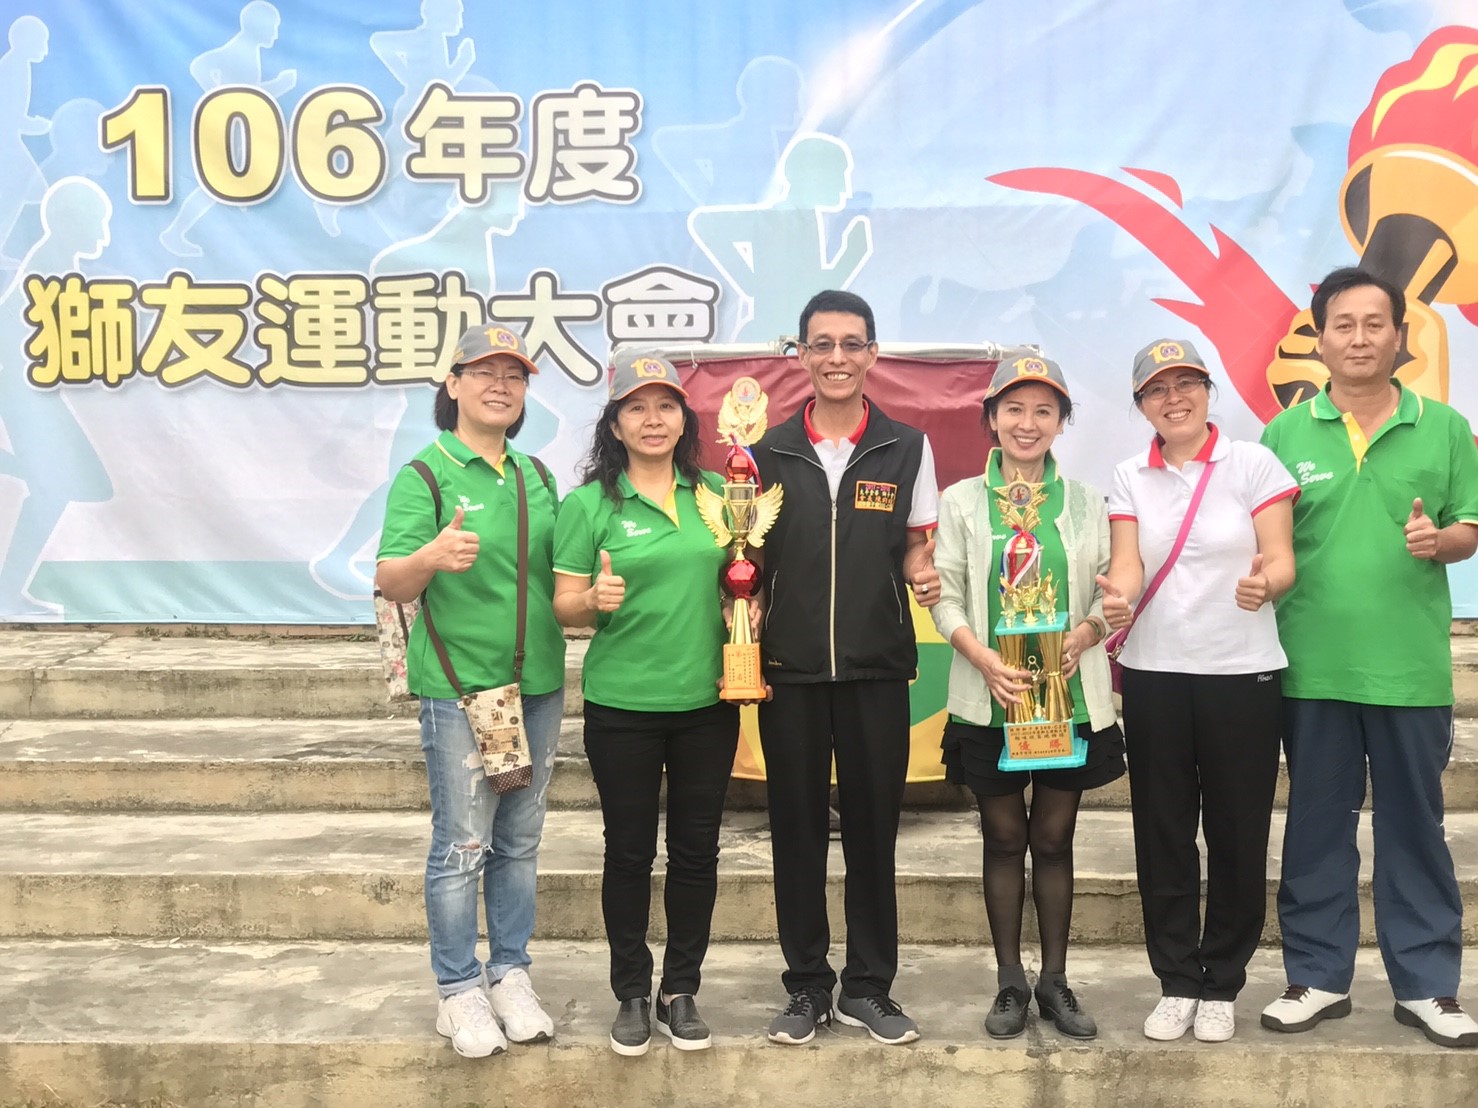 本會參加106年度C2區運動會榮獲普天同慶(第一名)及趣味競賽總錦標(優勝)兩座獎座。